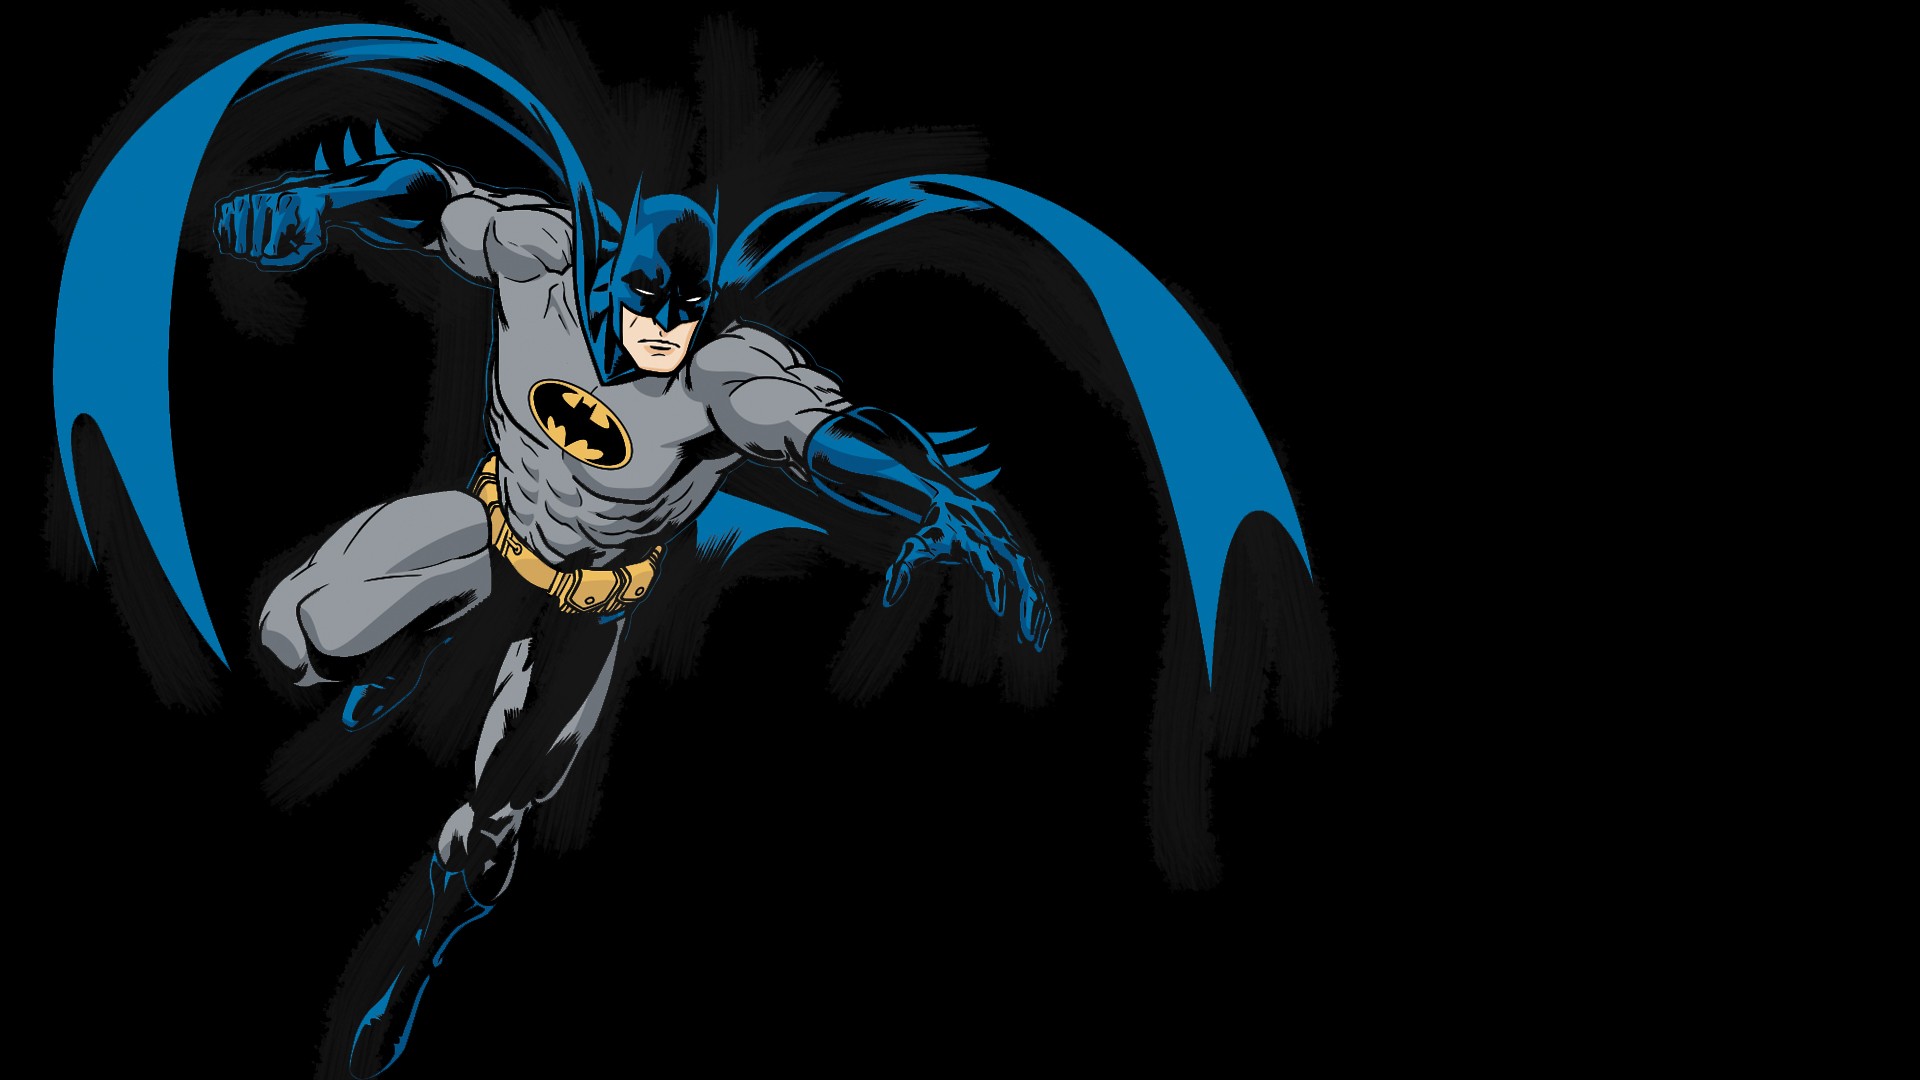 Бесплатное фото Batman logo на черном фото